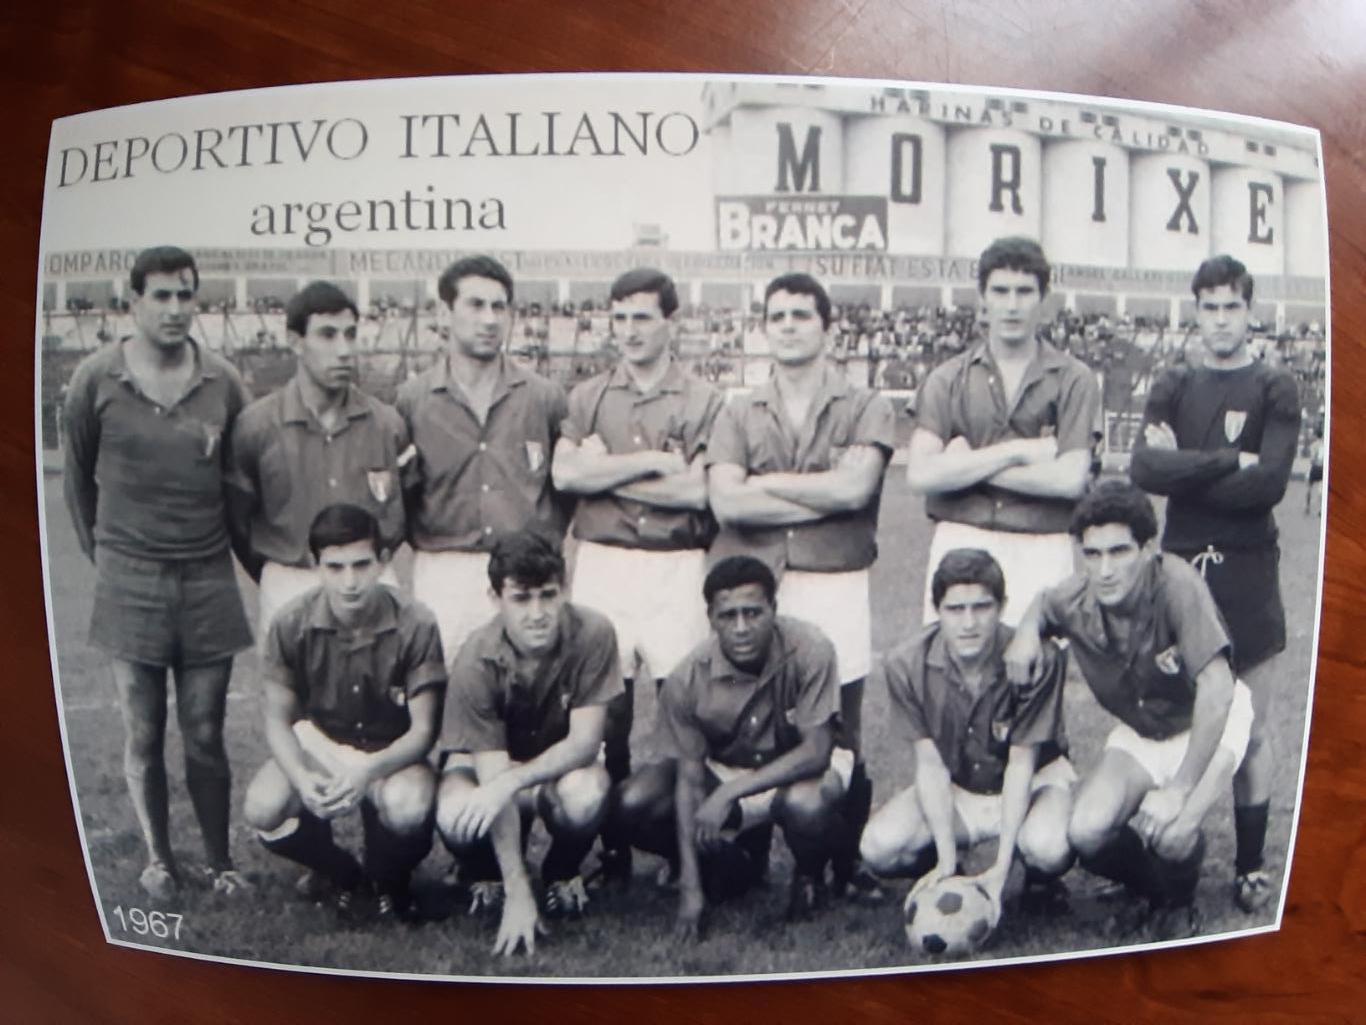 DEPORTIVO ITALIANO 1967 (ARGENTINA)